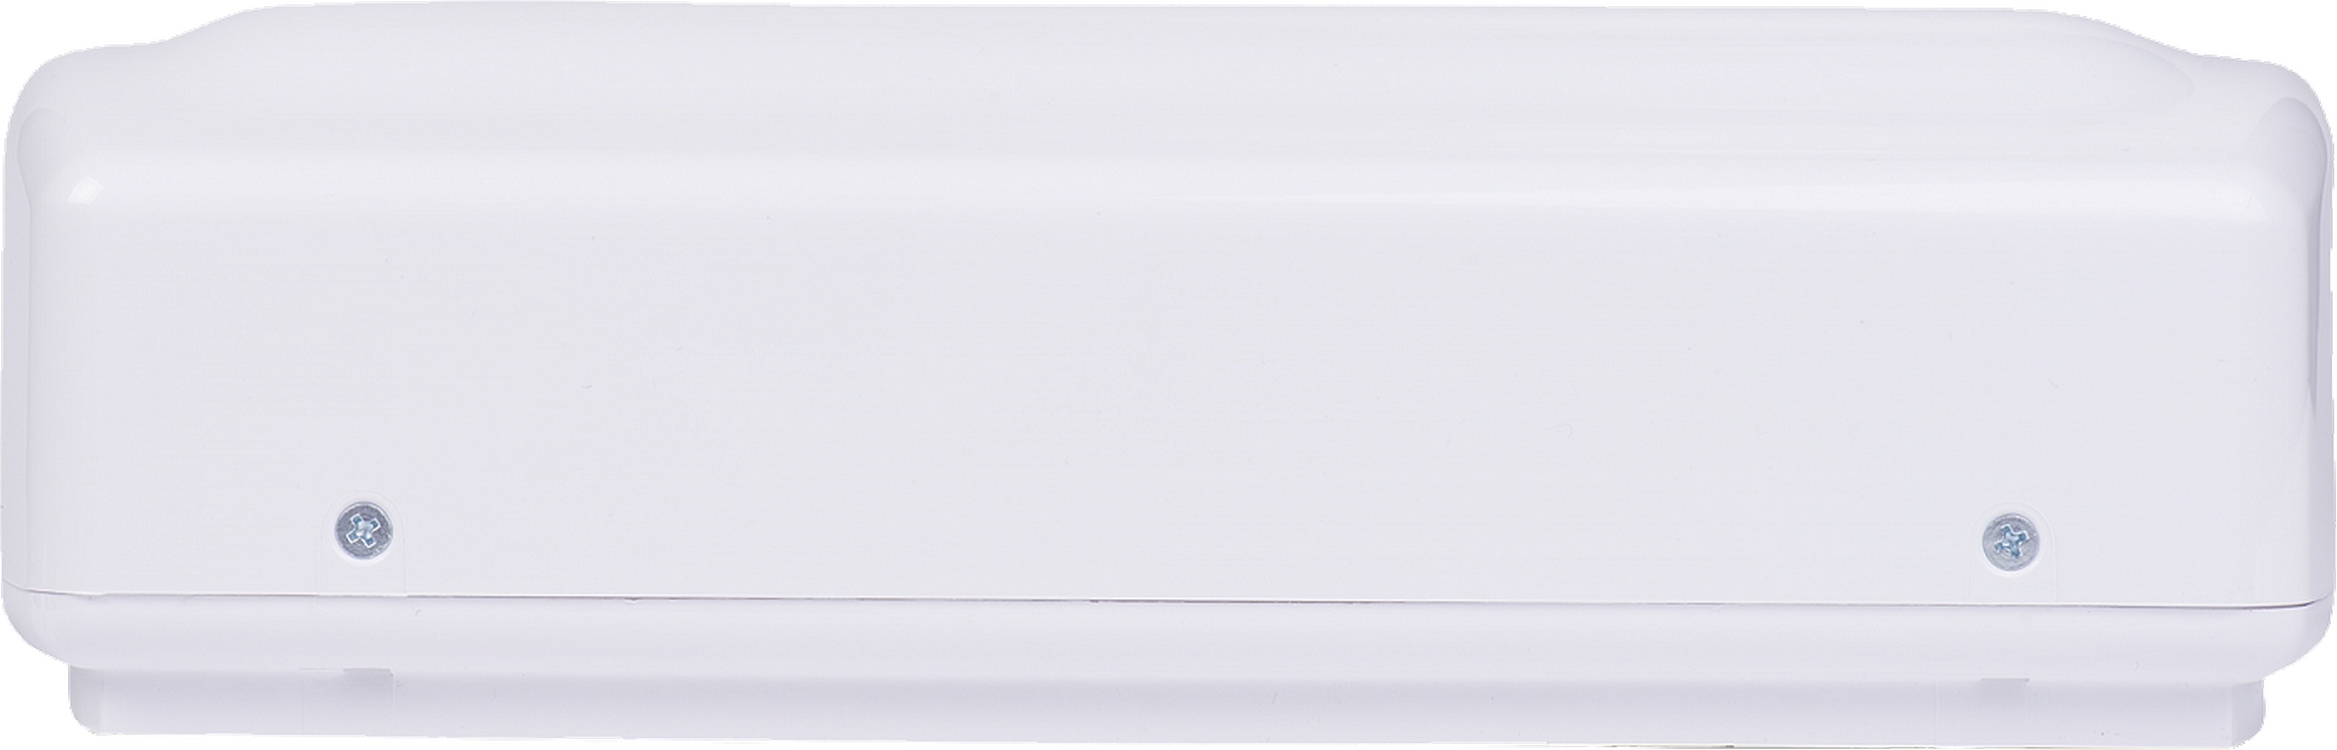 Проточный водонагреватель Atmor Basic 3,5 KW Shower характеристики - фотография 7